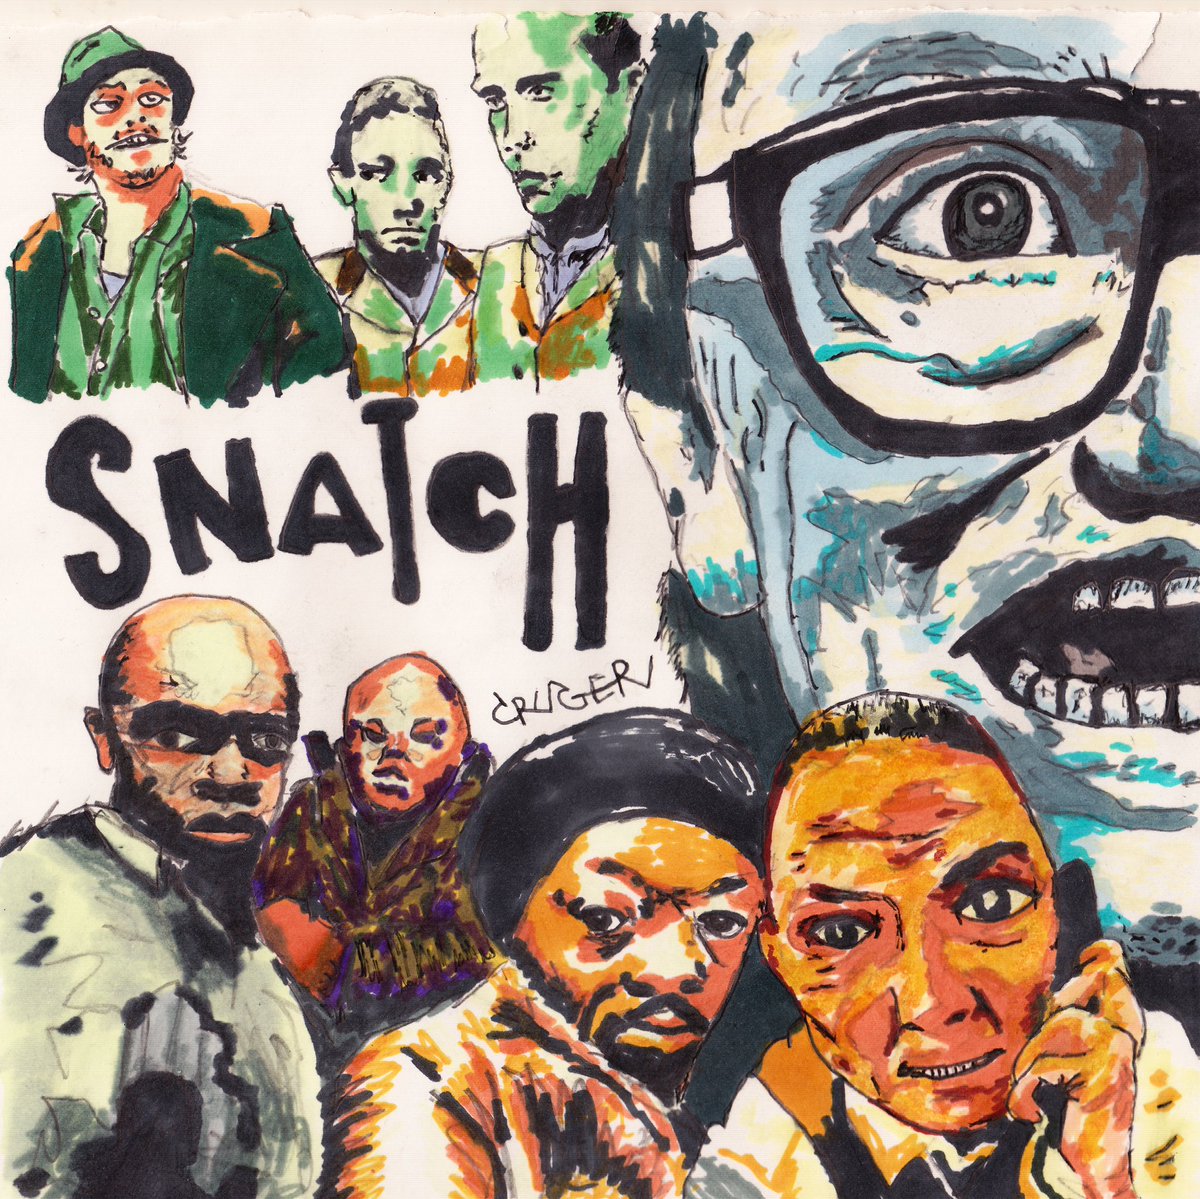 4. Snatch (2000)